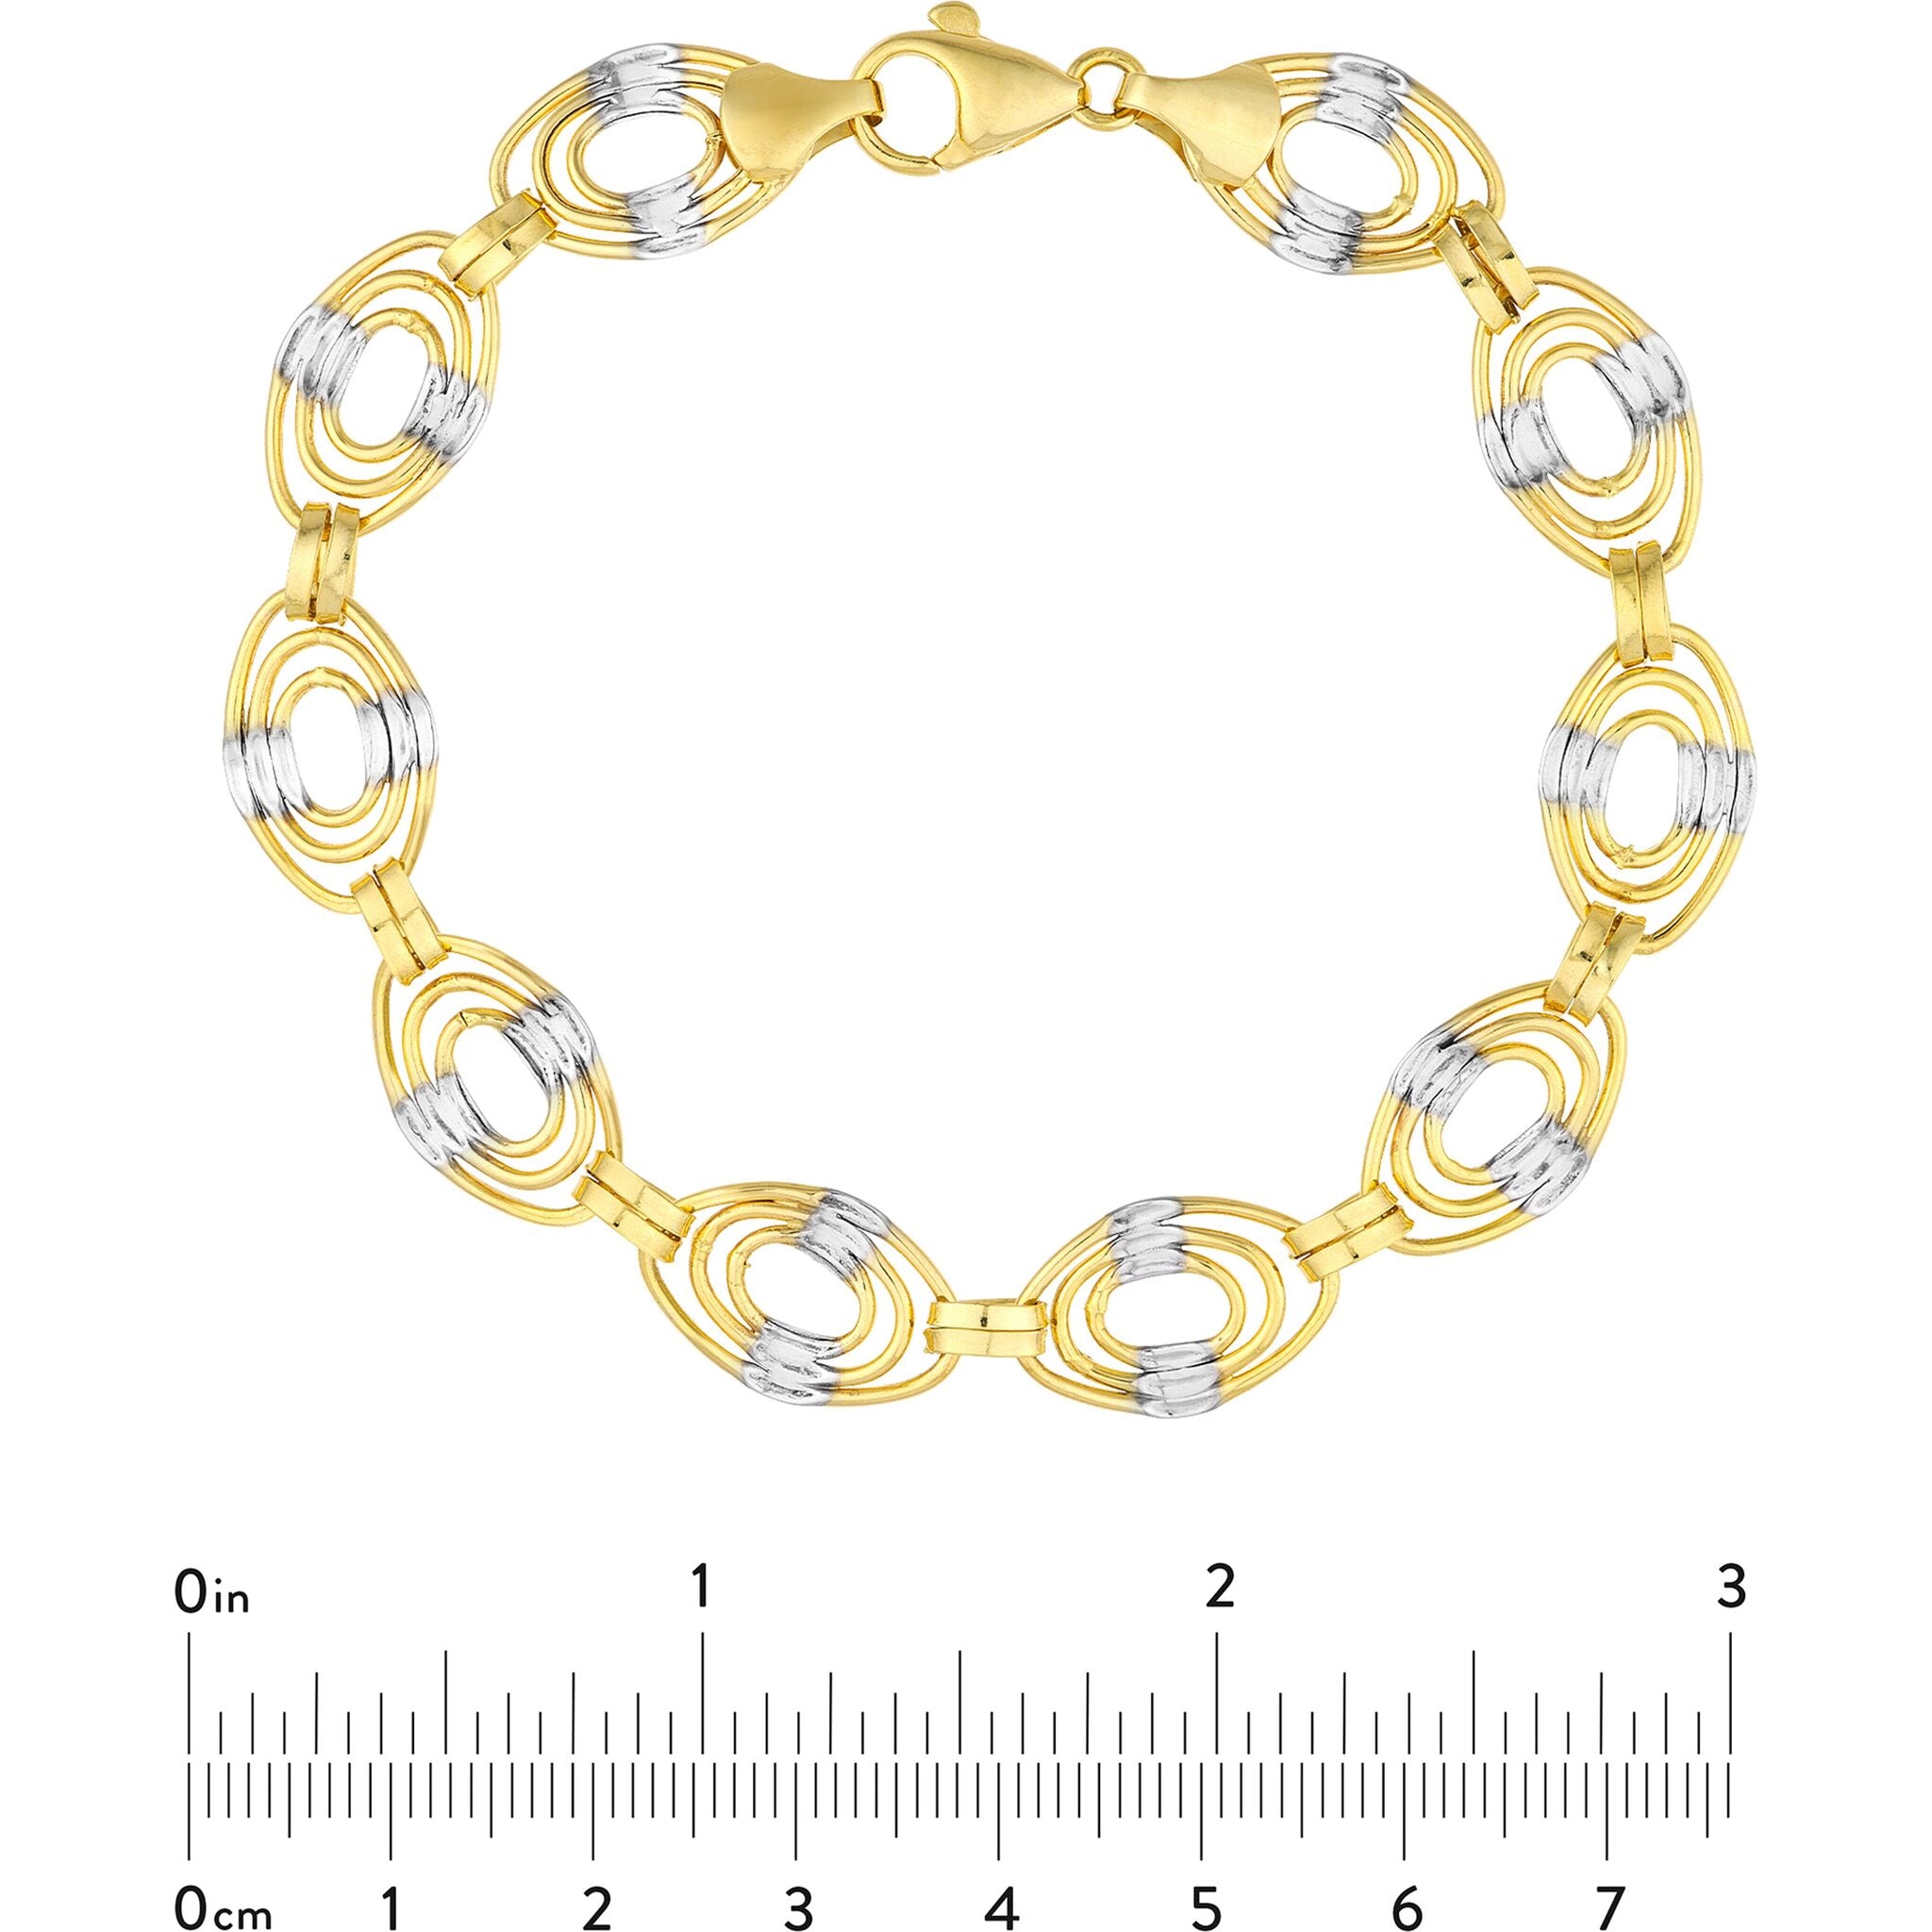 Olas D'oro 7.5 Bracelet - 14K Yellow Gold Heart Charm on Oval Rolo Chain Bracelet